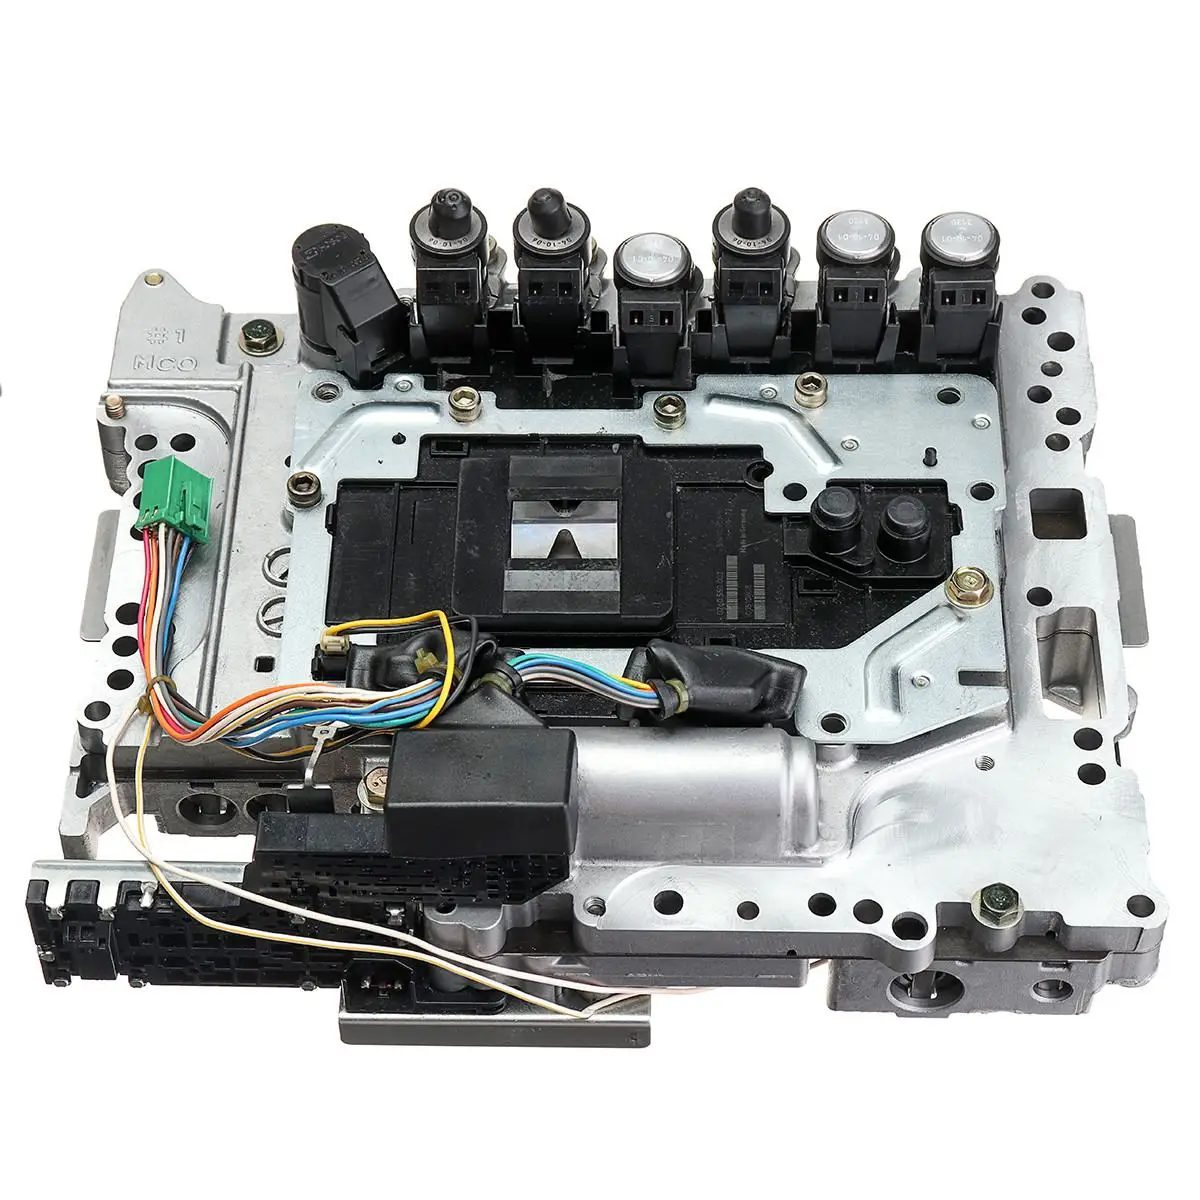 RE5R05A корпус клапана подходит для Нисса клапанов и запчастей автозапчасти автоматическая коробка передач клапан Корпус авто аксессуары